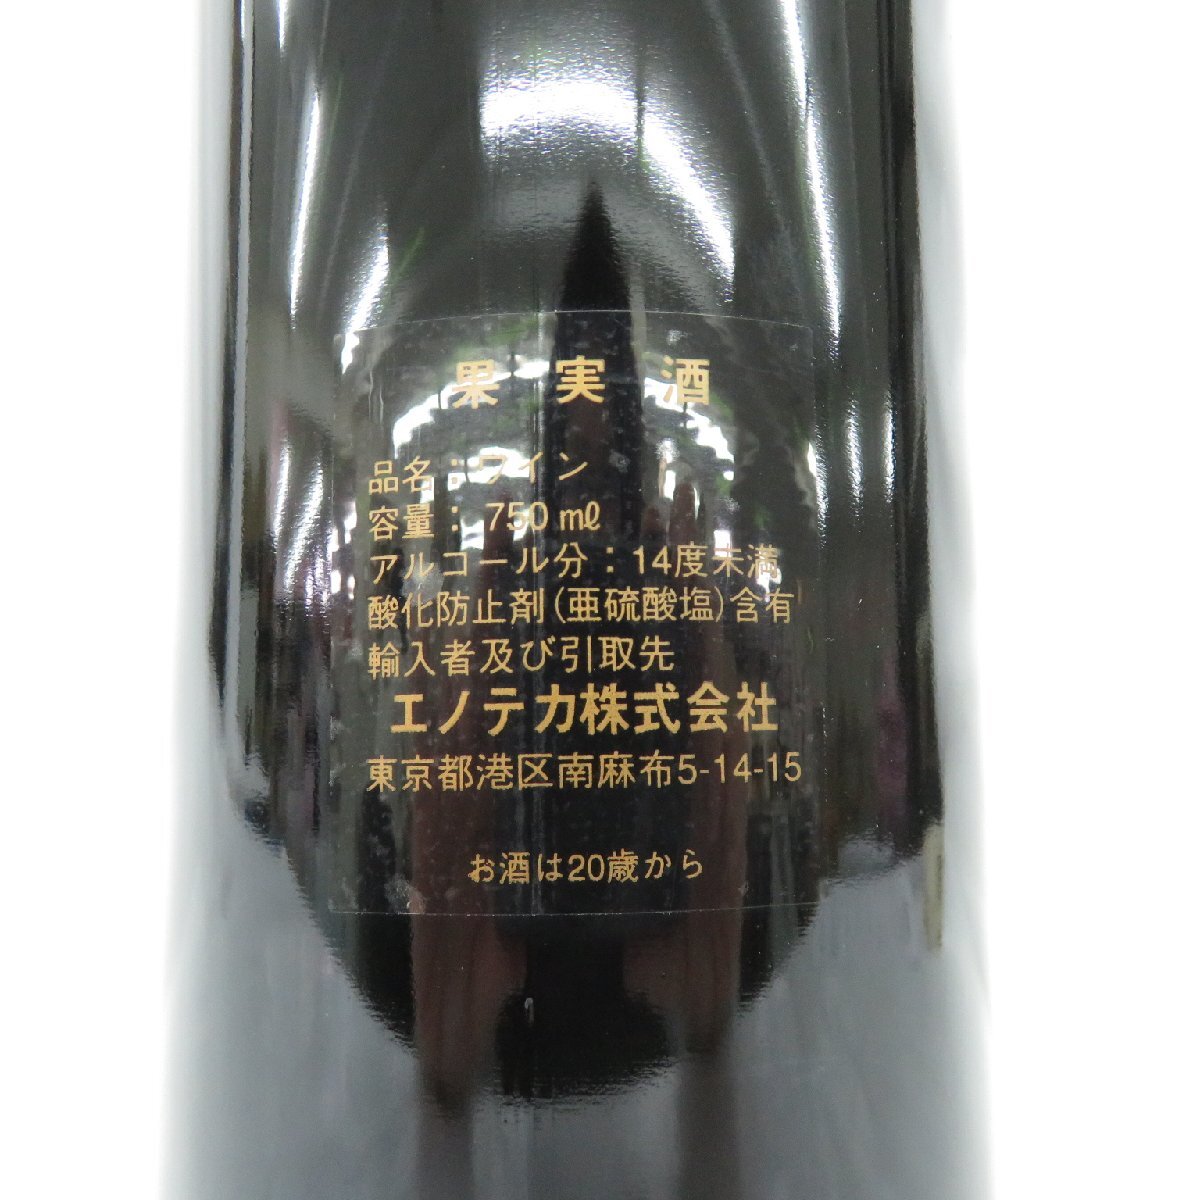 【未開栓】CHATEAU MARGAUX シャトー・マルゴー 2000 赤 ワイン 750ml 13% 11559438 0427の画像9